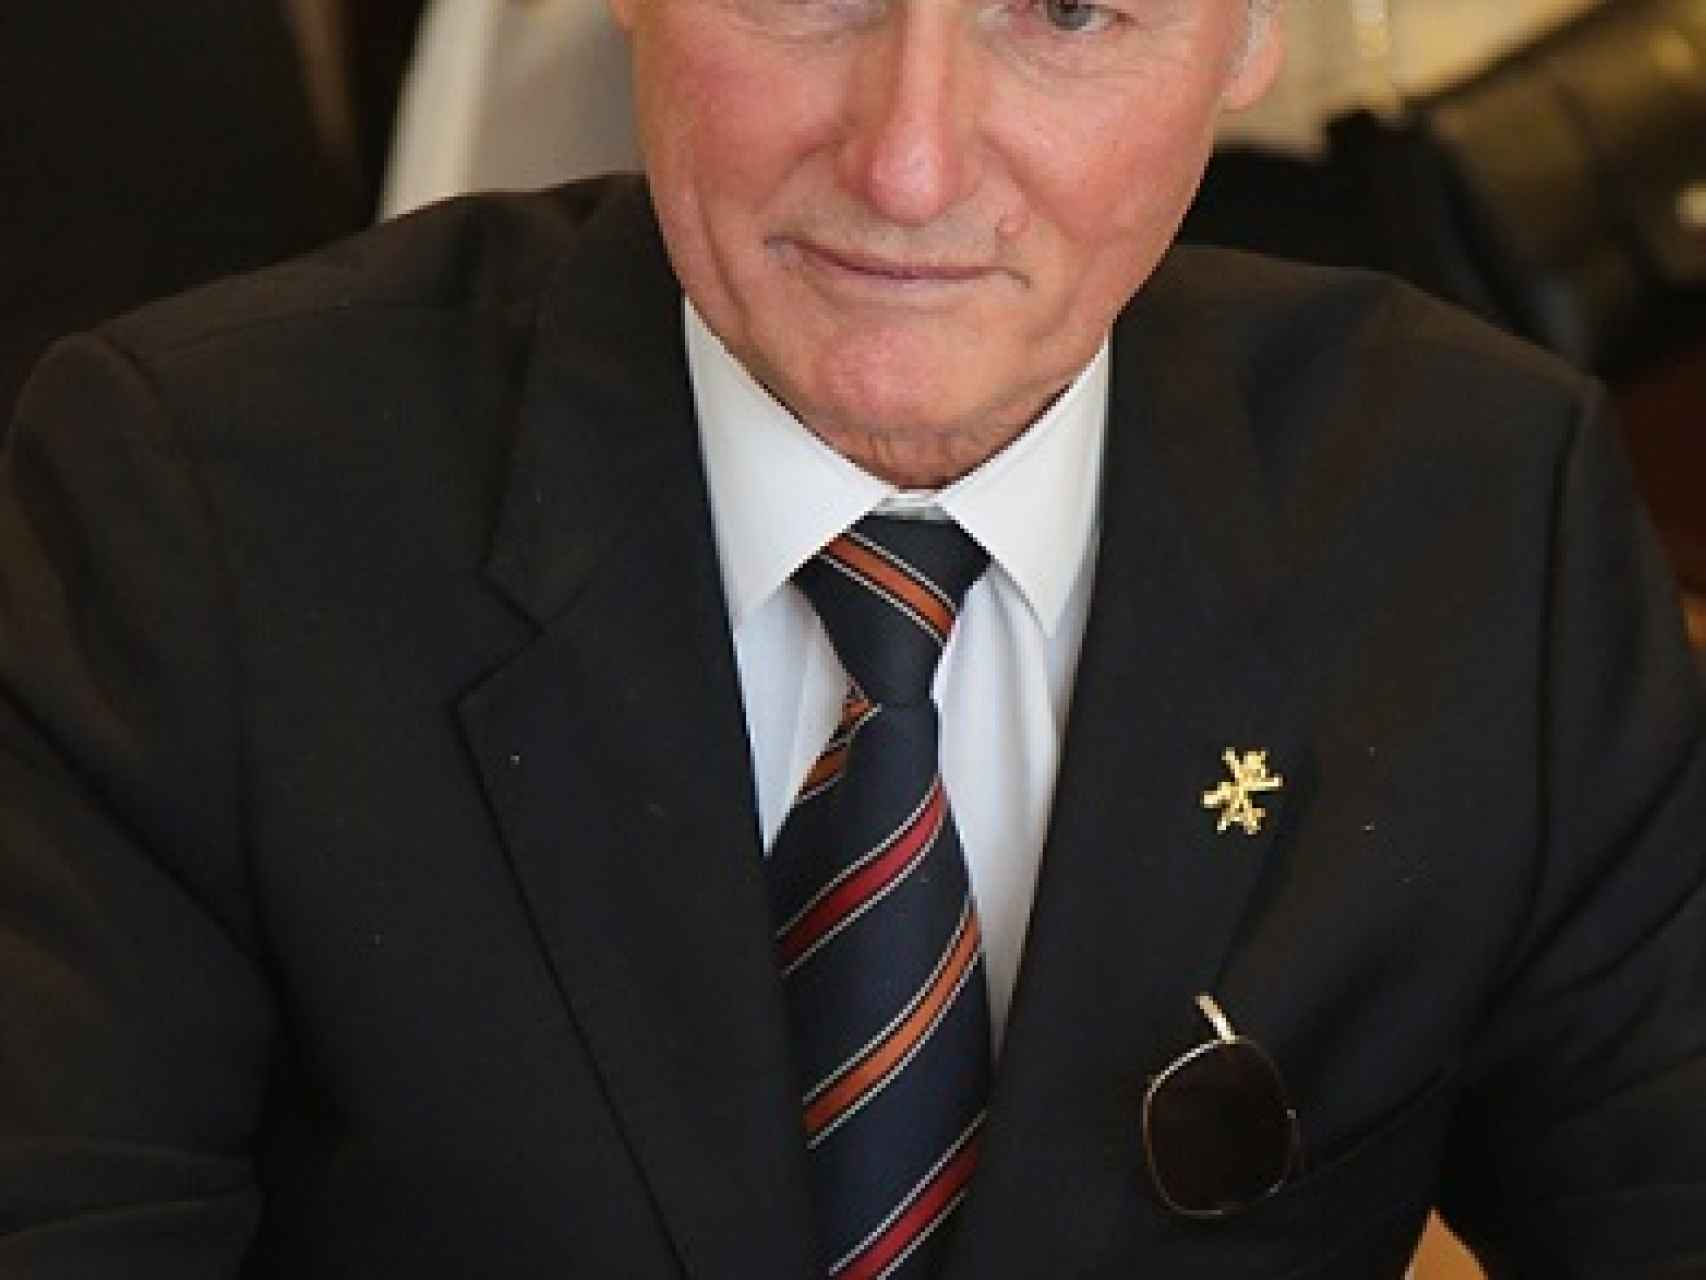 Sixto de Borbón-Parma nació en Pau en 1940.